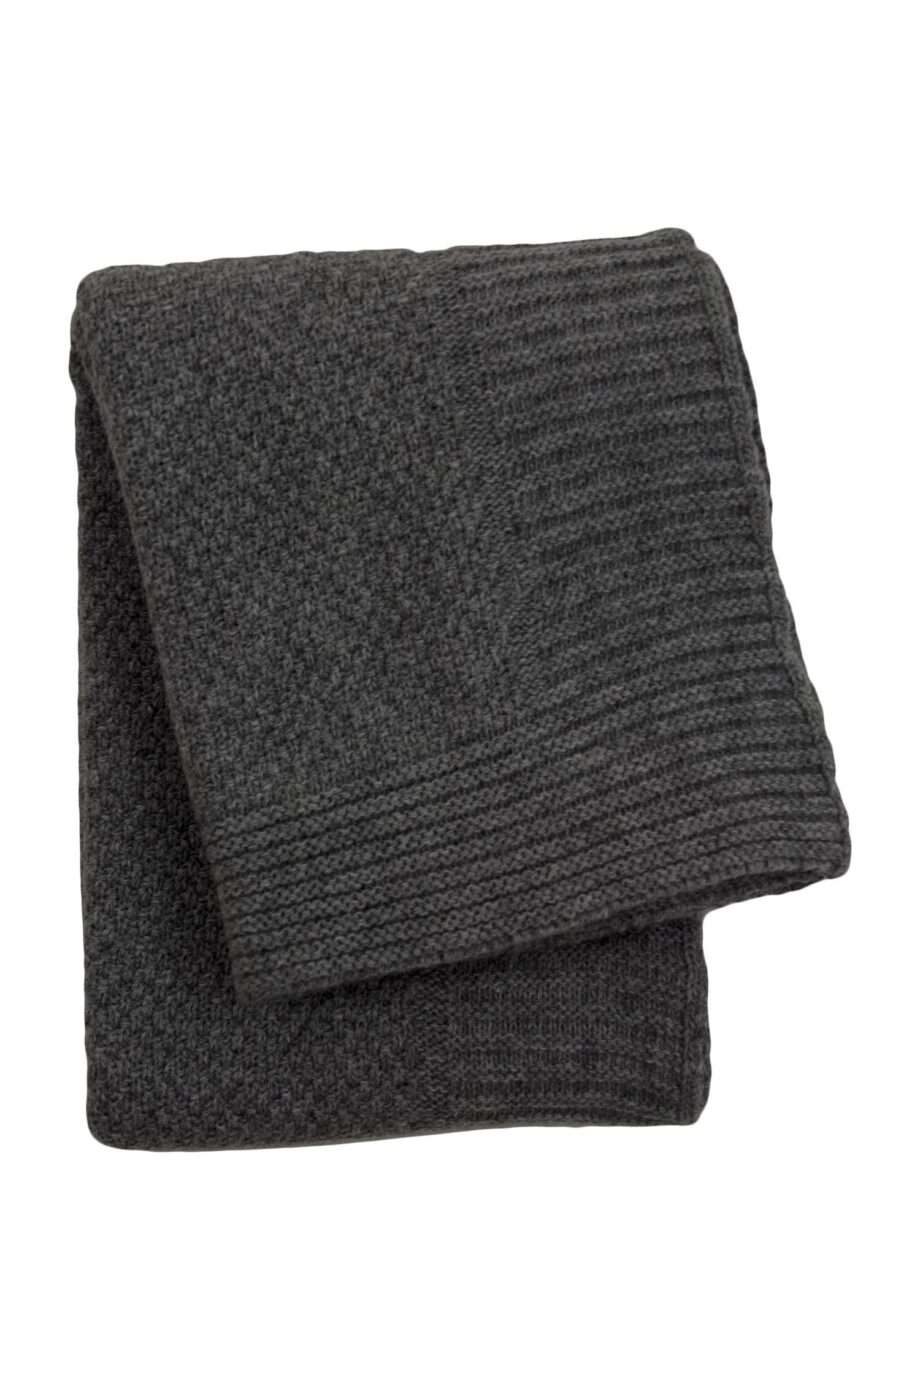 rice anthracite knitted woolen little blanket medium